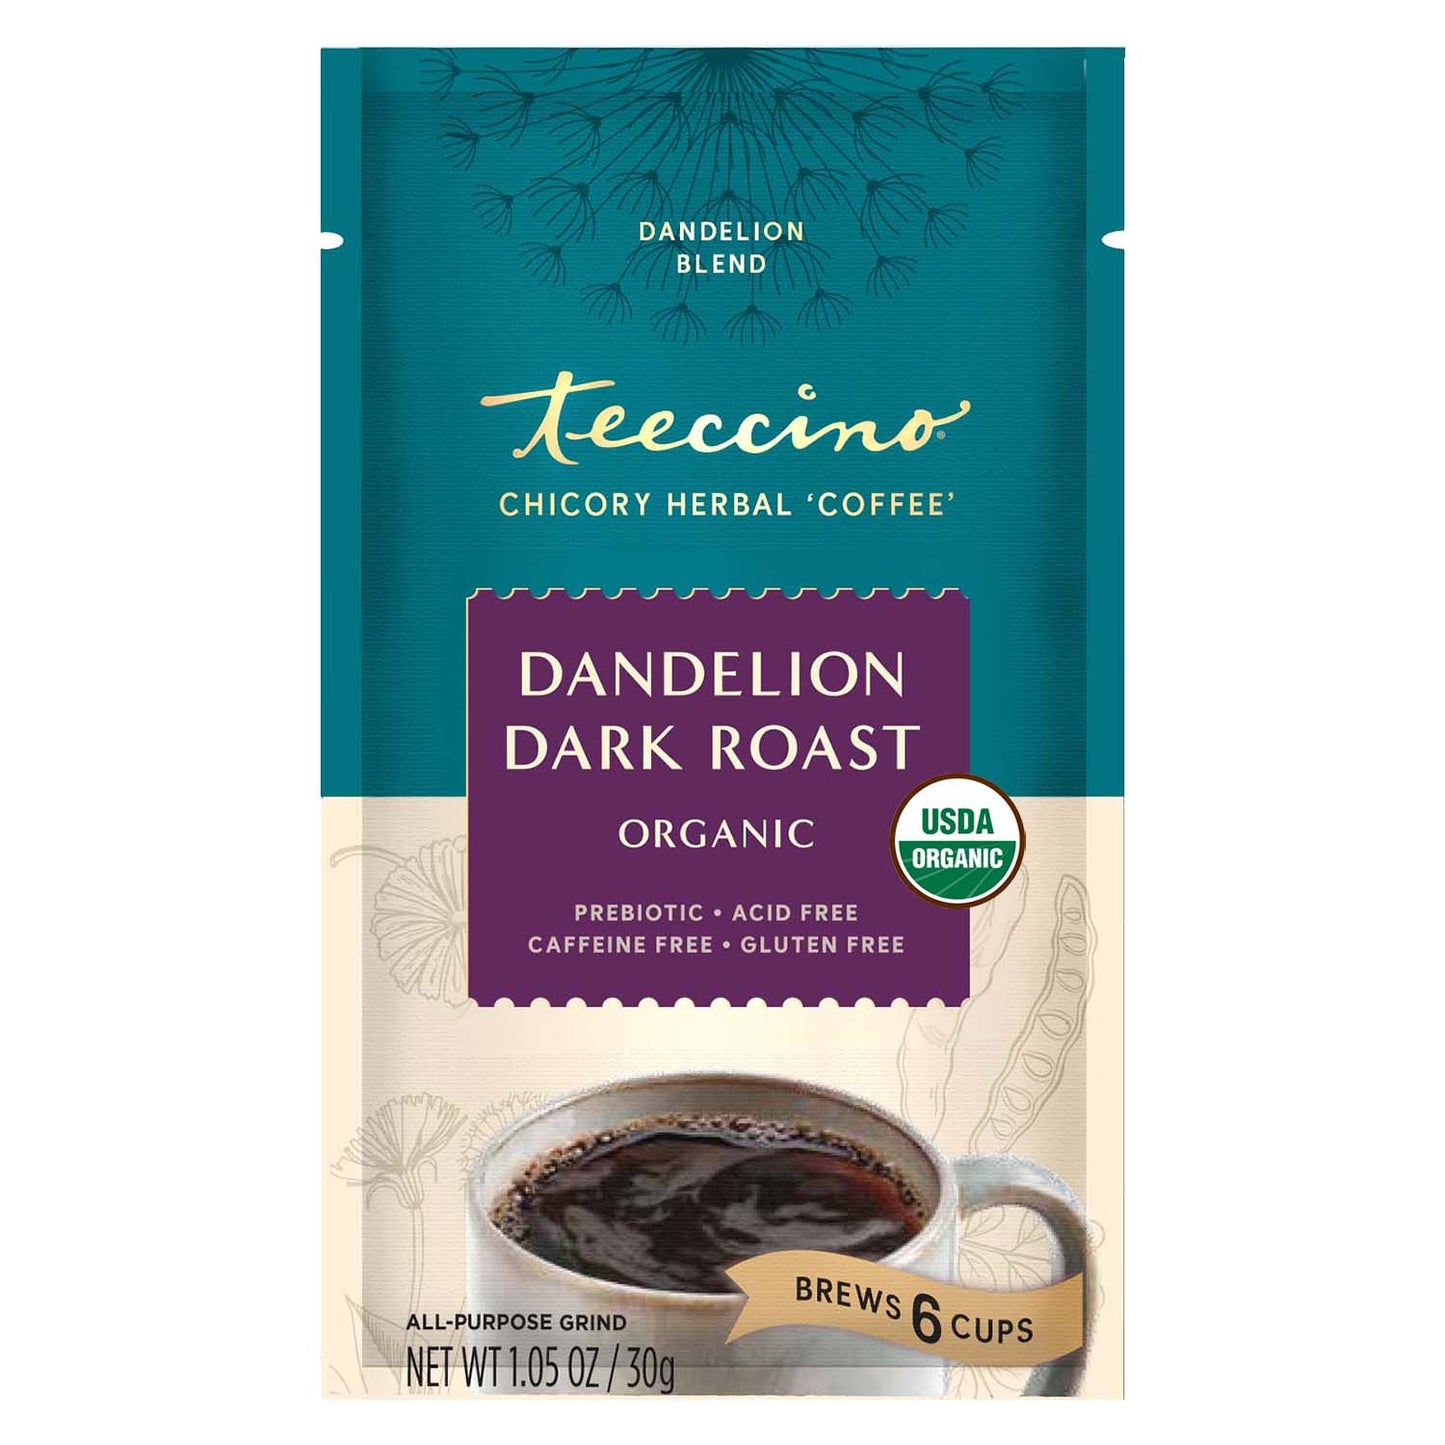 Dandelion Dark Roast Herbal Coffee